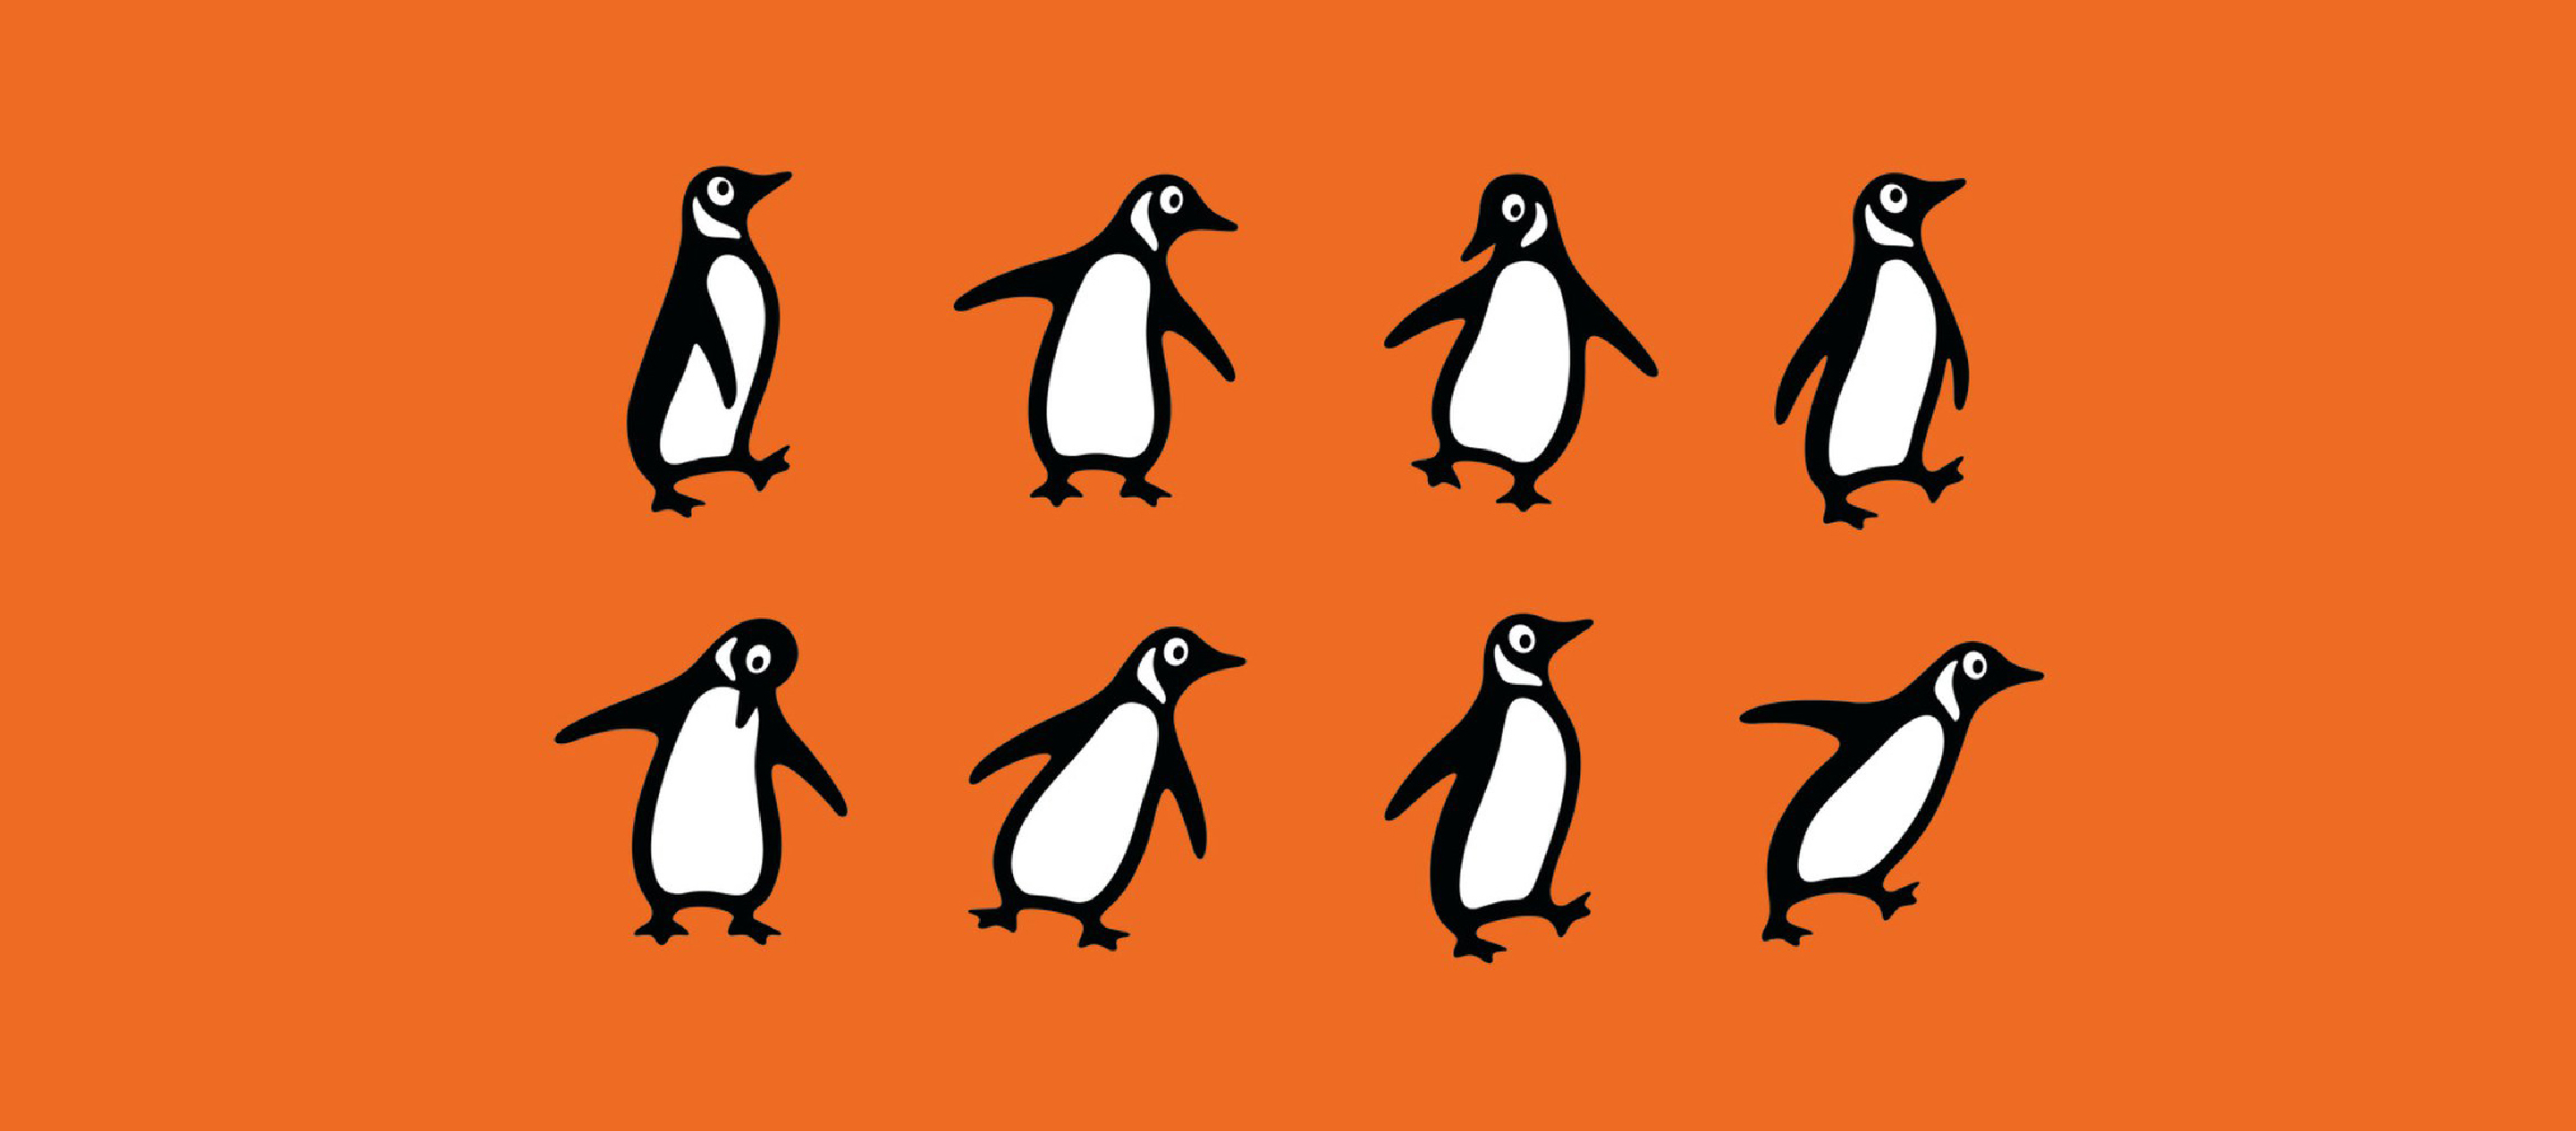 Penguin Books นกเพนกวินแห่งหมู่บ้านวรรณกรรม แม่แบบหนังสือพ็อกเกตบุ๊กที่อยากให้คนเข้าถึงหนังสือง่าย